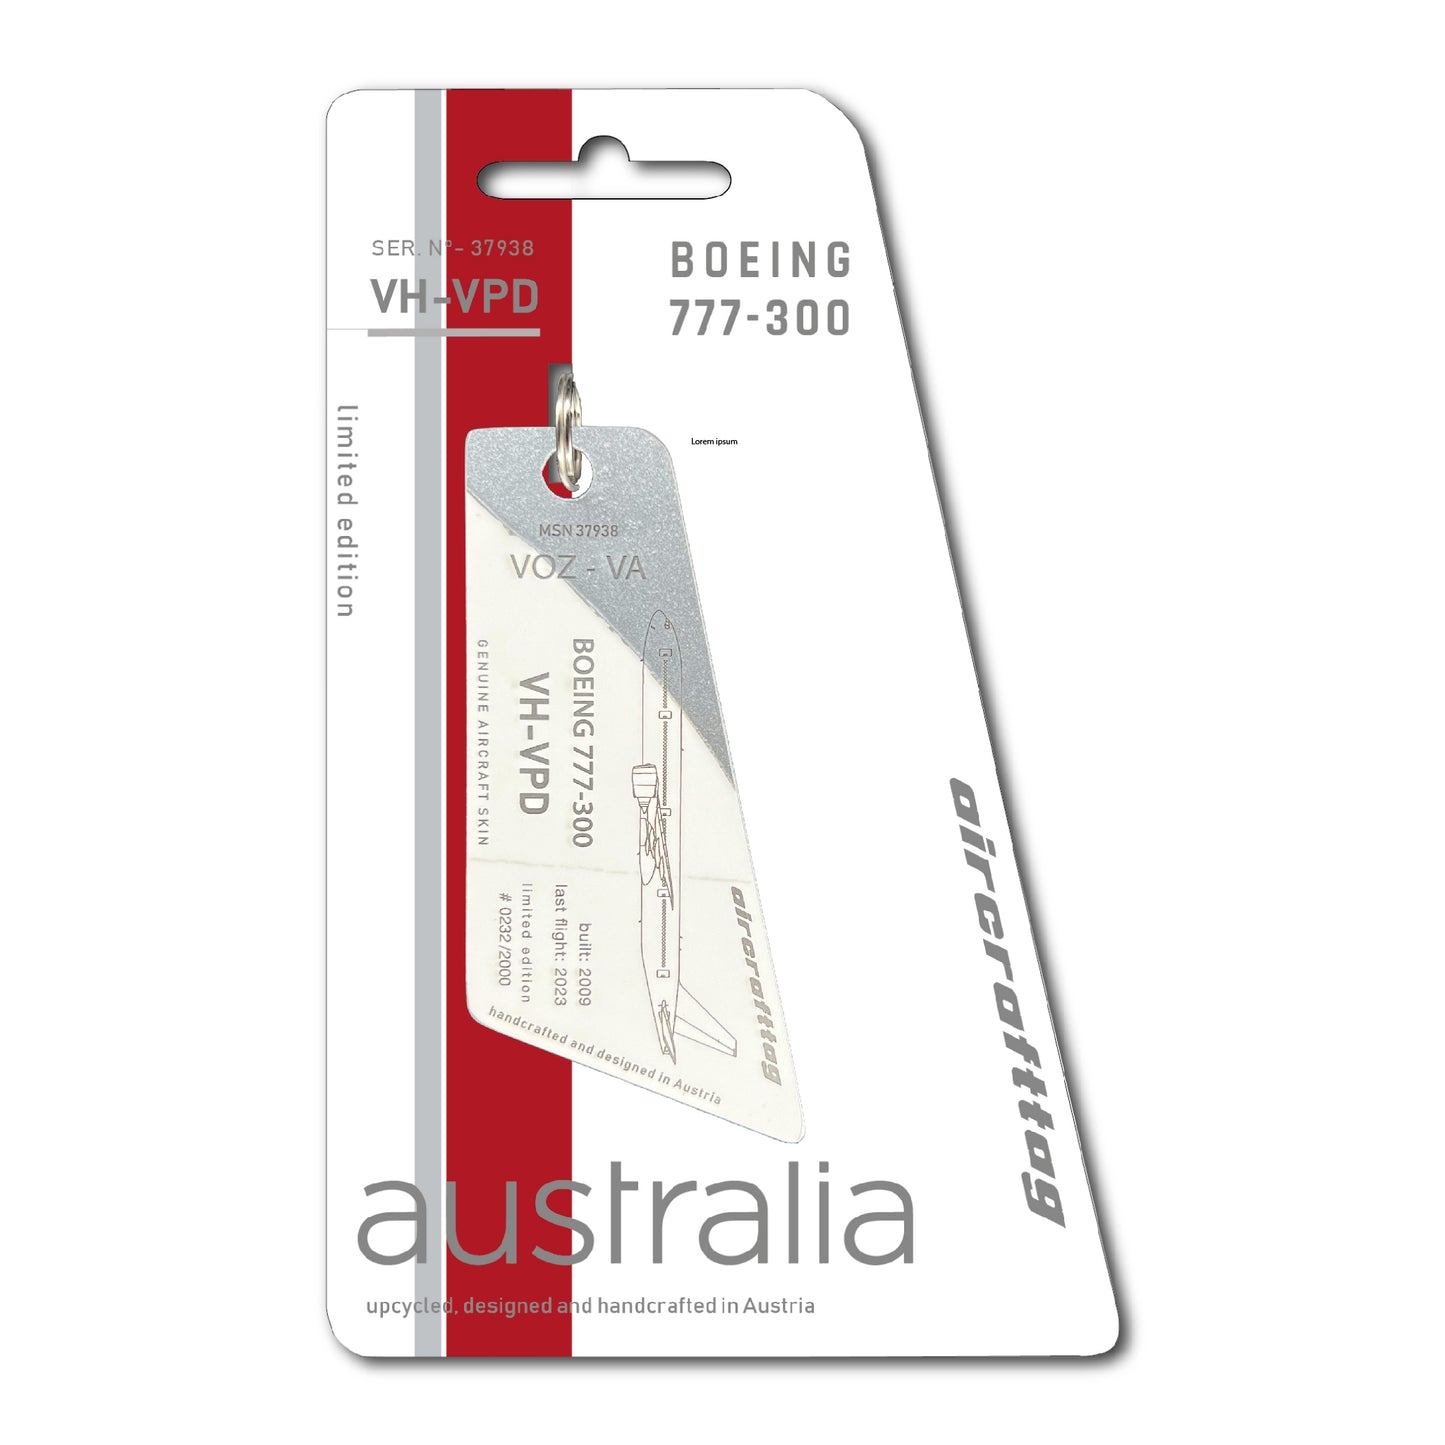 Boeing B777-300 -  Virgin Australia - VH-VPD